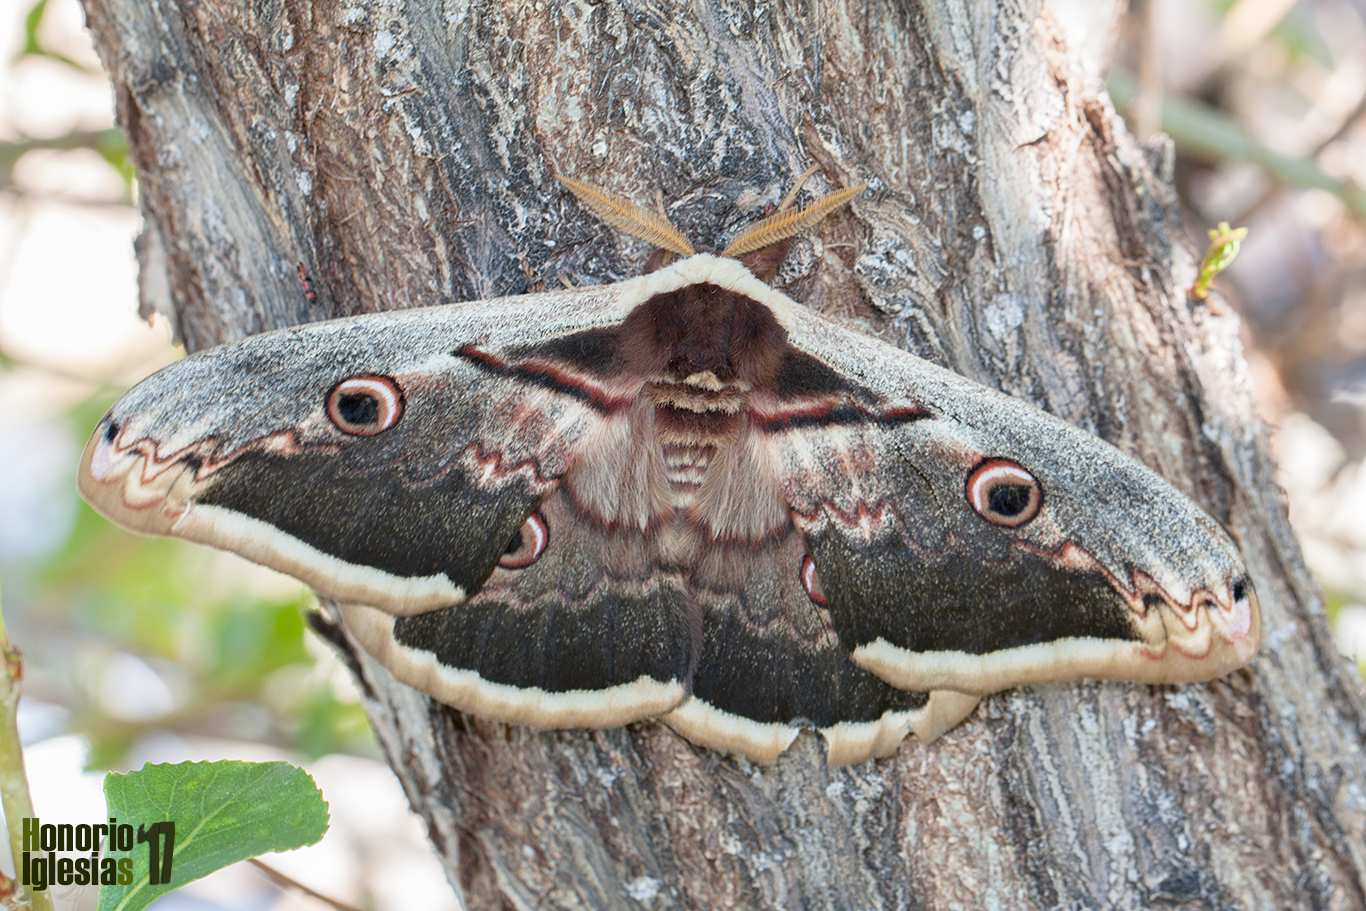 Espectacular ejemplar de mariposa nocturna gran pavón nocturno (Saturnia pyri), el lepidóptero más grande de Europa. Esta mariposa no se alimenta en su etapa de imago o adulto.